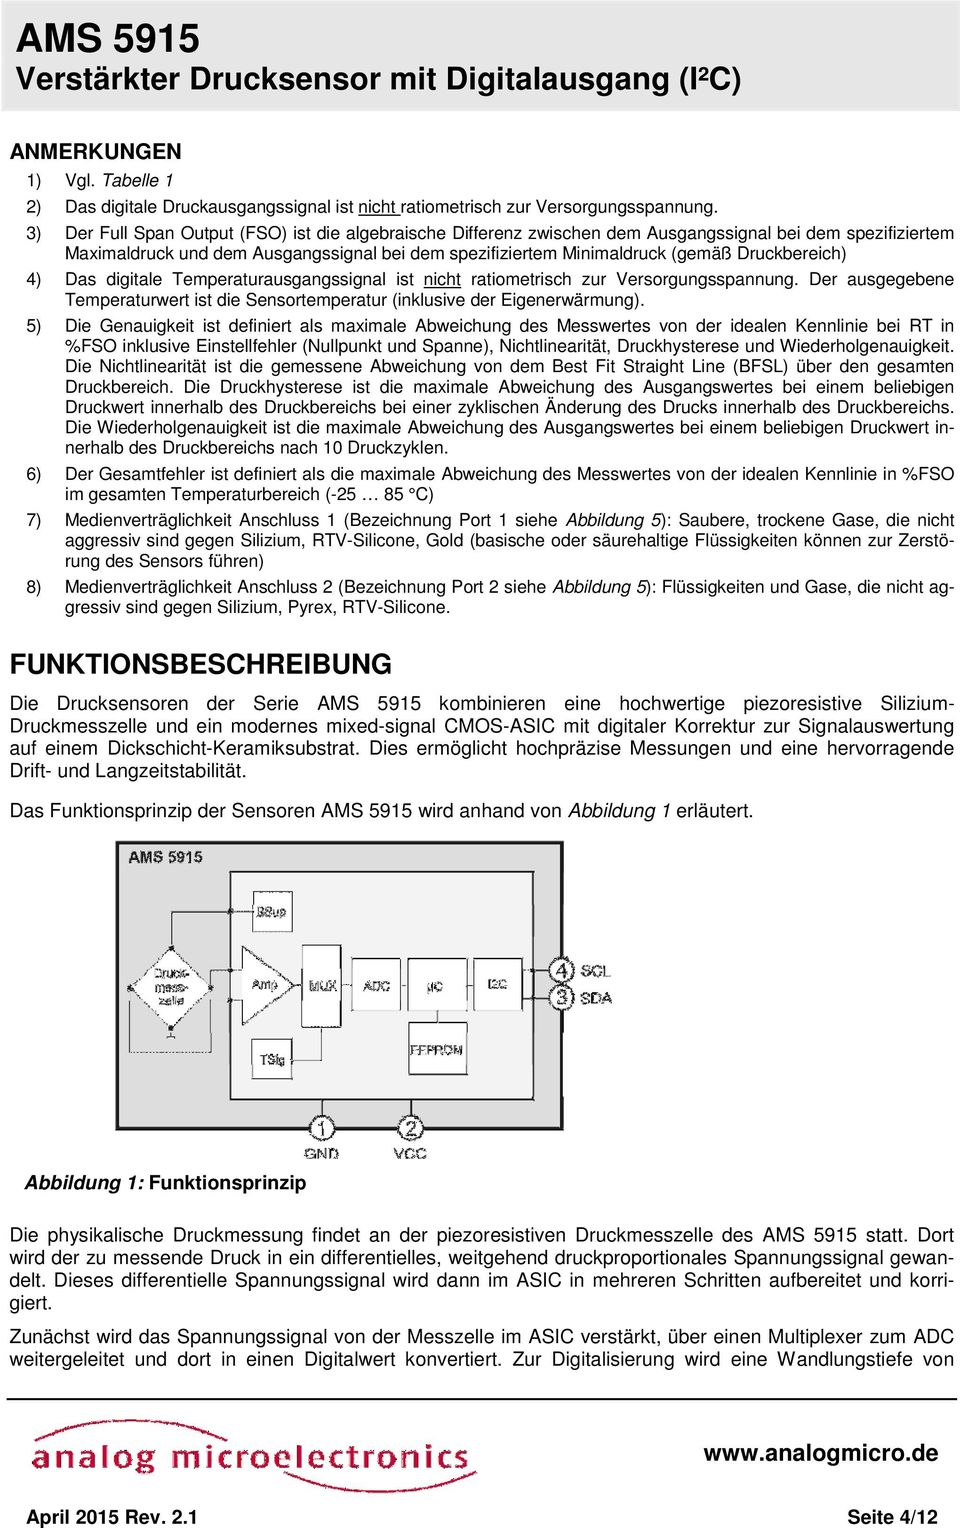 AMS 5915 Verstärkter Drucksensor mit Digitalausgang (I²C) - PDF